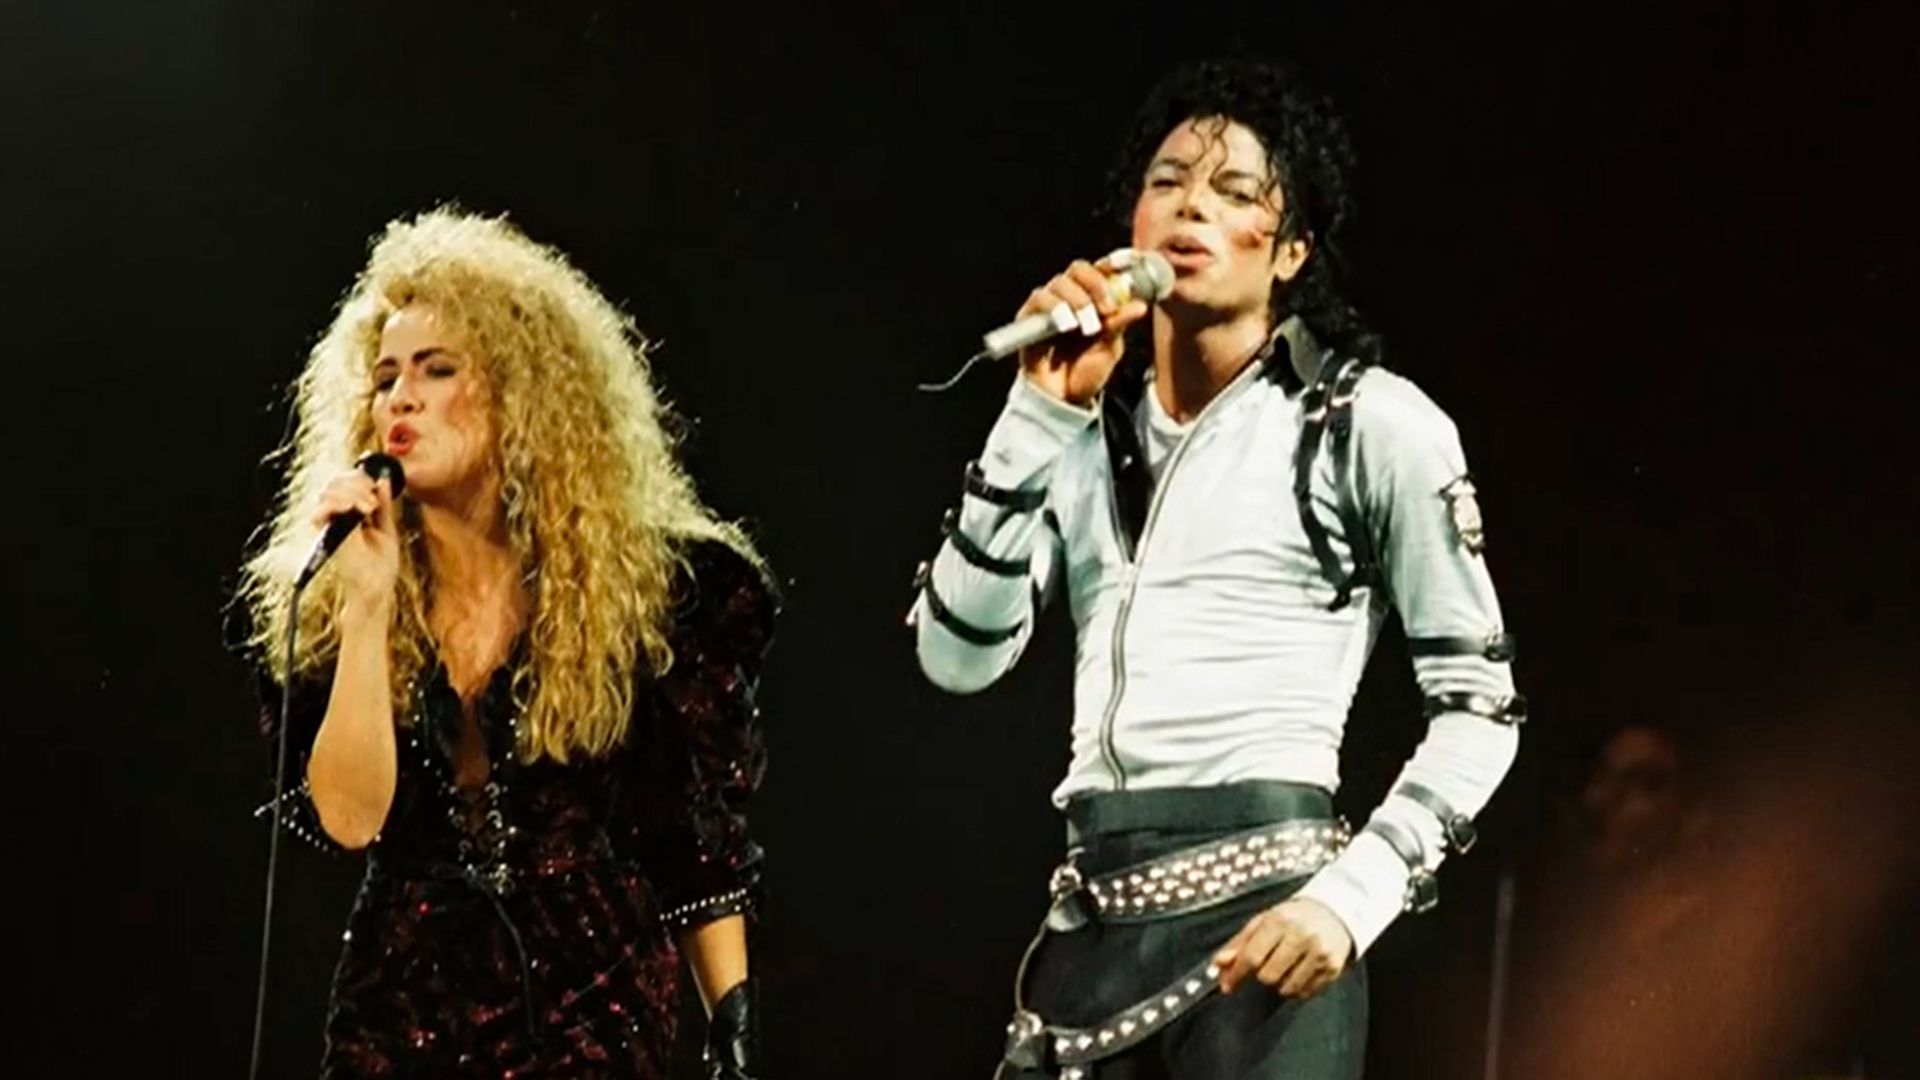 Sheryl Crow admitió que vio “cosas realmente extrañas” en su época de corista de Michael Jackson